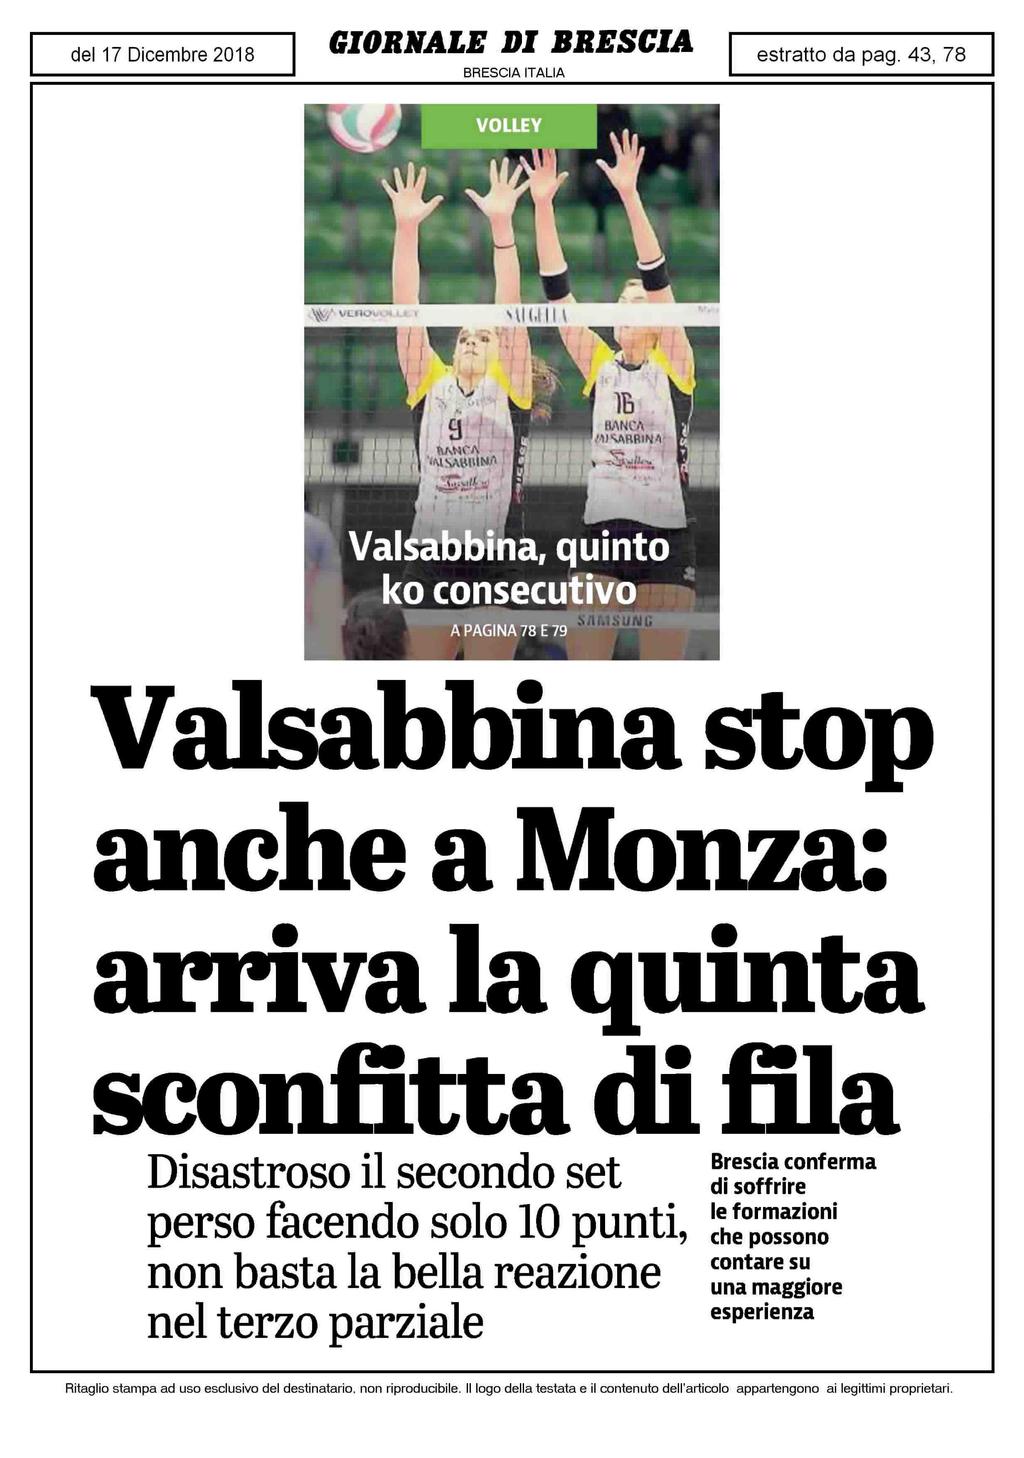 Valsabbìna stop anche a Monza: arriva la quinta sconfitta di fila Disastroso il secondo set perso facendo solo